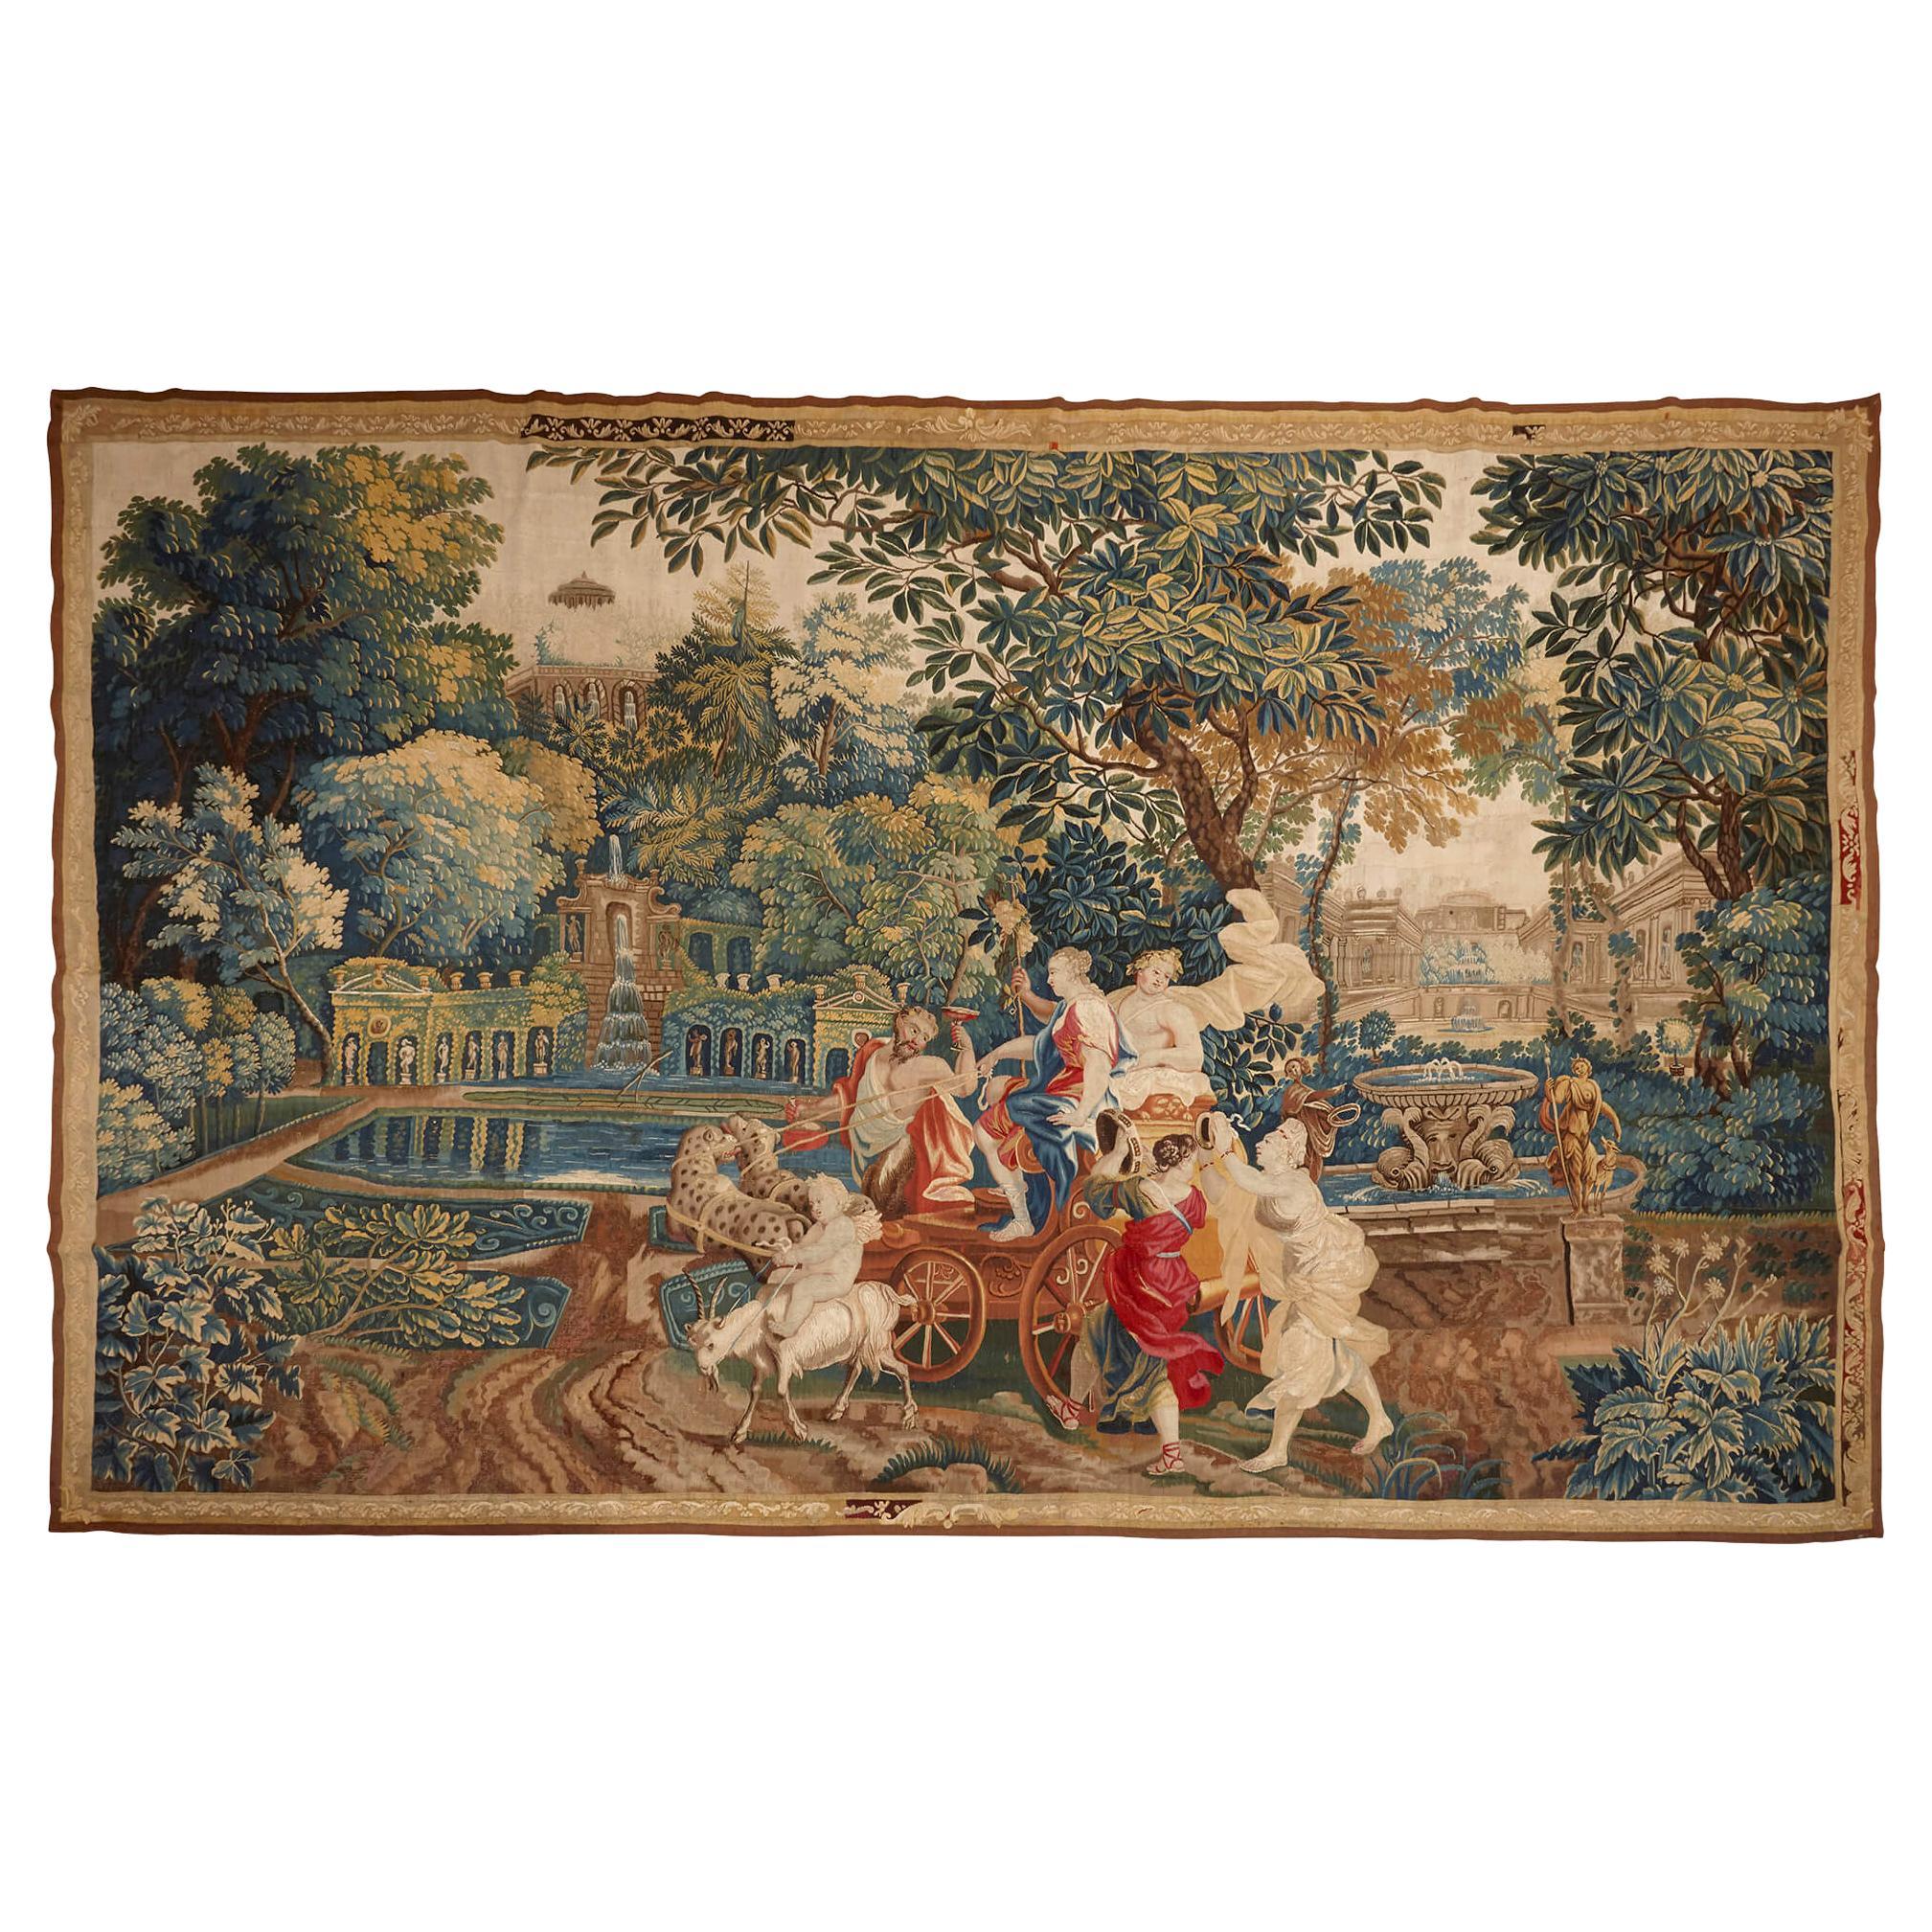 Bacchus und Ariadne, mythologischer Wandteppich aus dem frühen 18. Jahrhundert